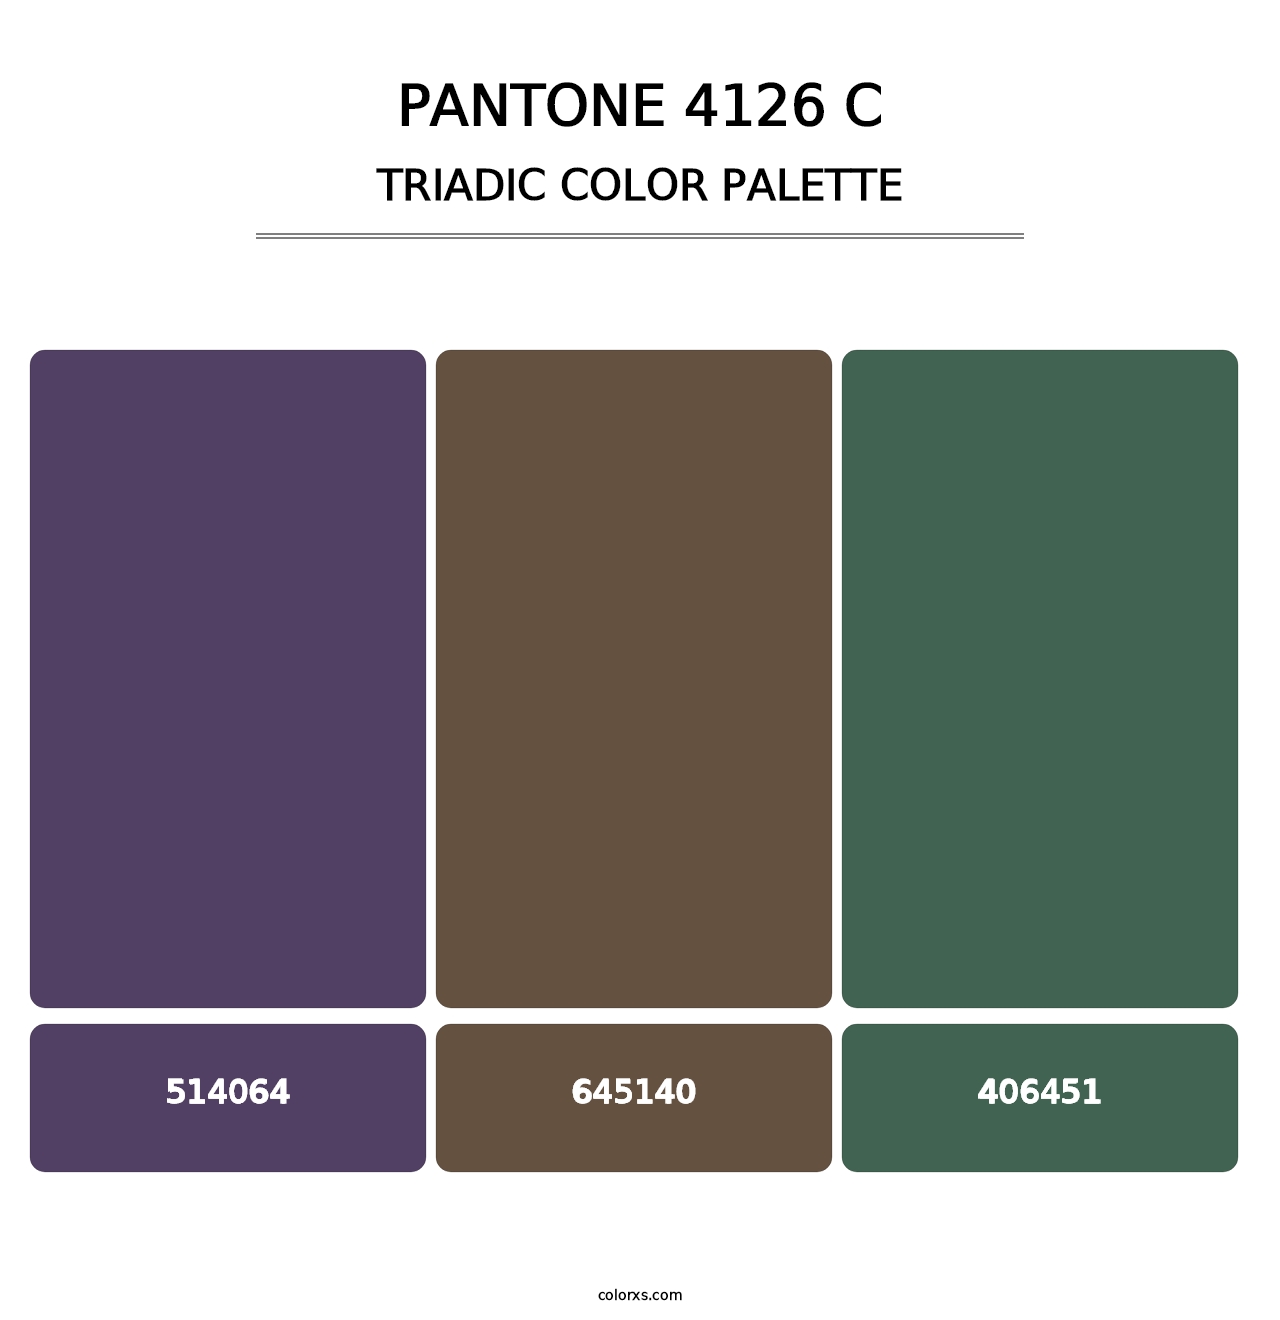 PANTONE 4126 C - Triadic Color Palette